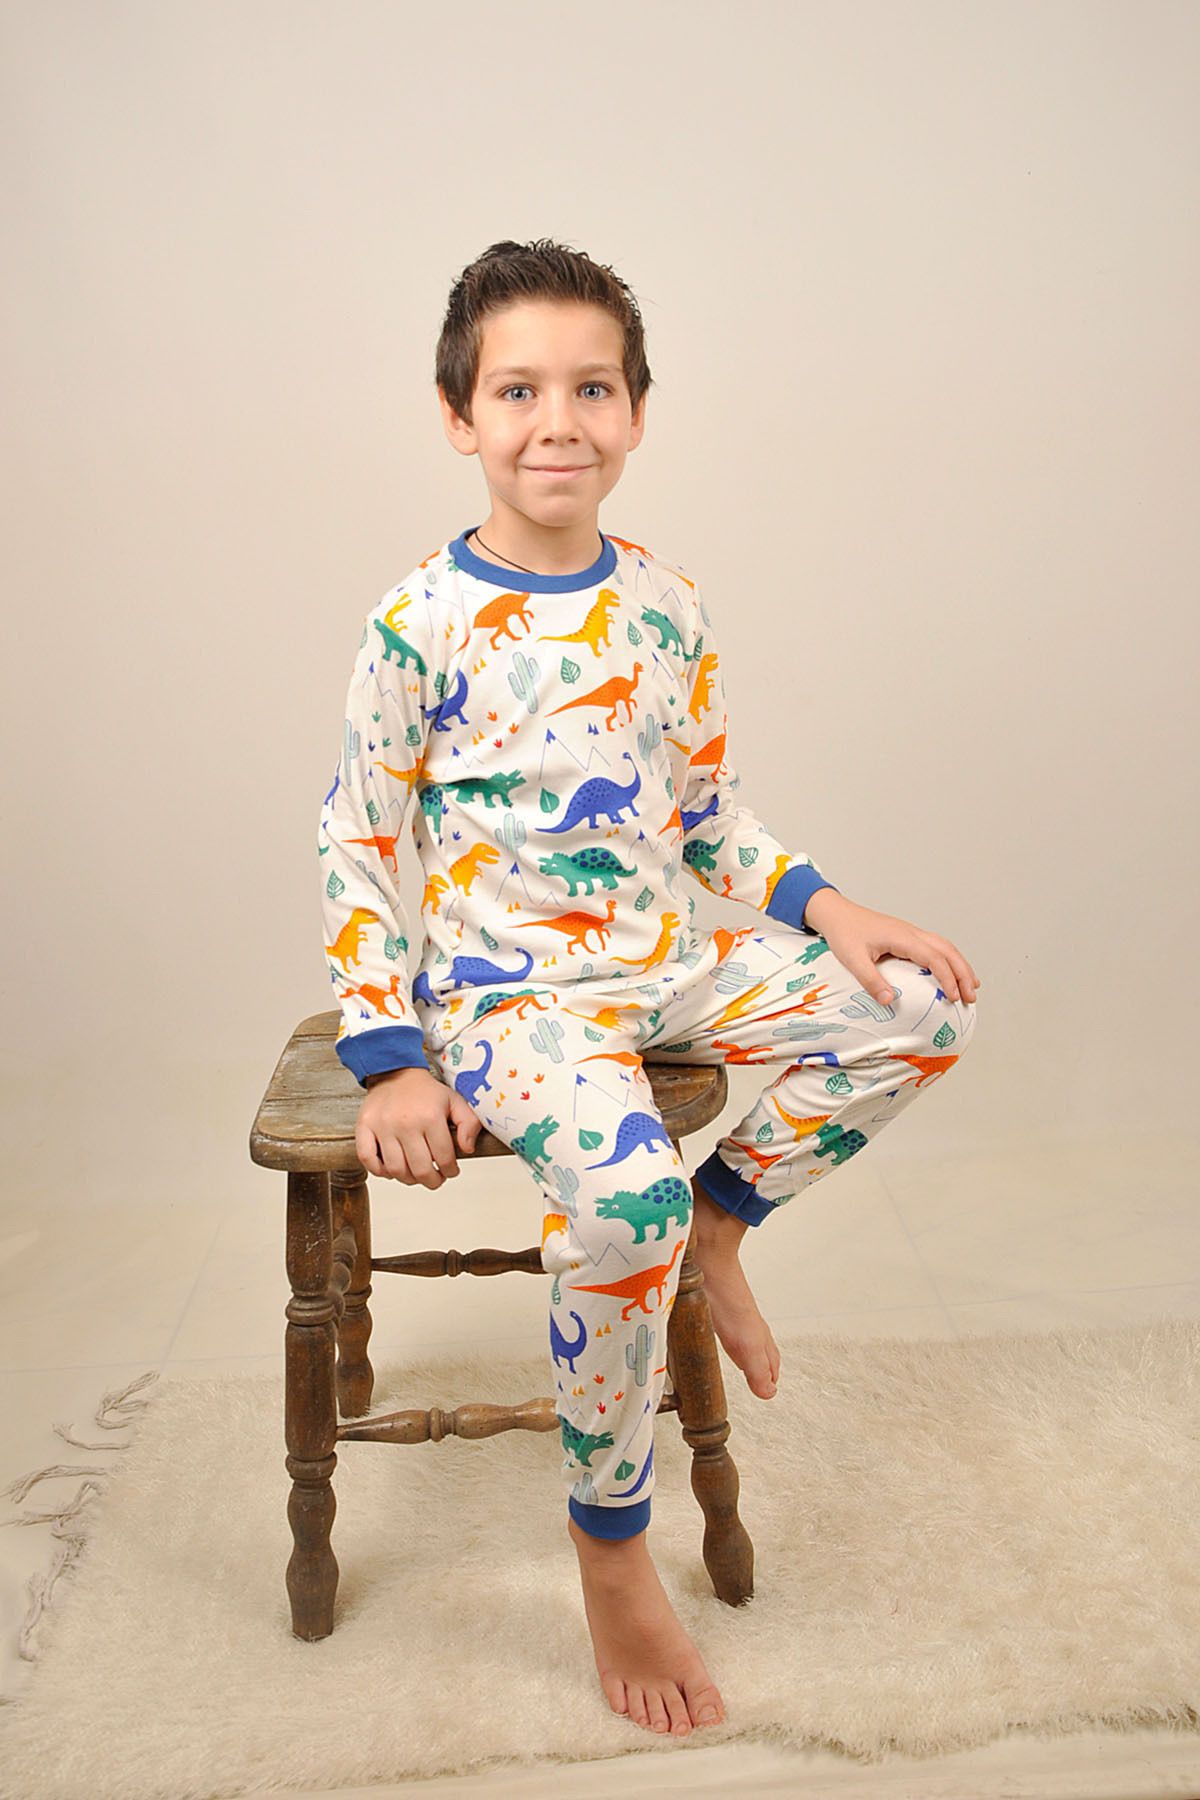 Peki Çocuk 5 Al 4 Öde Erkek Nefes Alan Pamuk Dino Dinozor Pijama Takimi 2li Dinozor Dinosour Pajama 15066